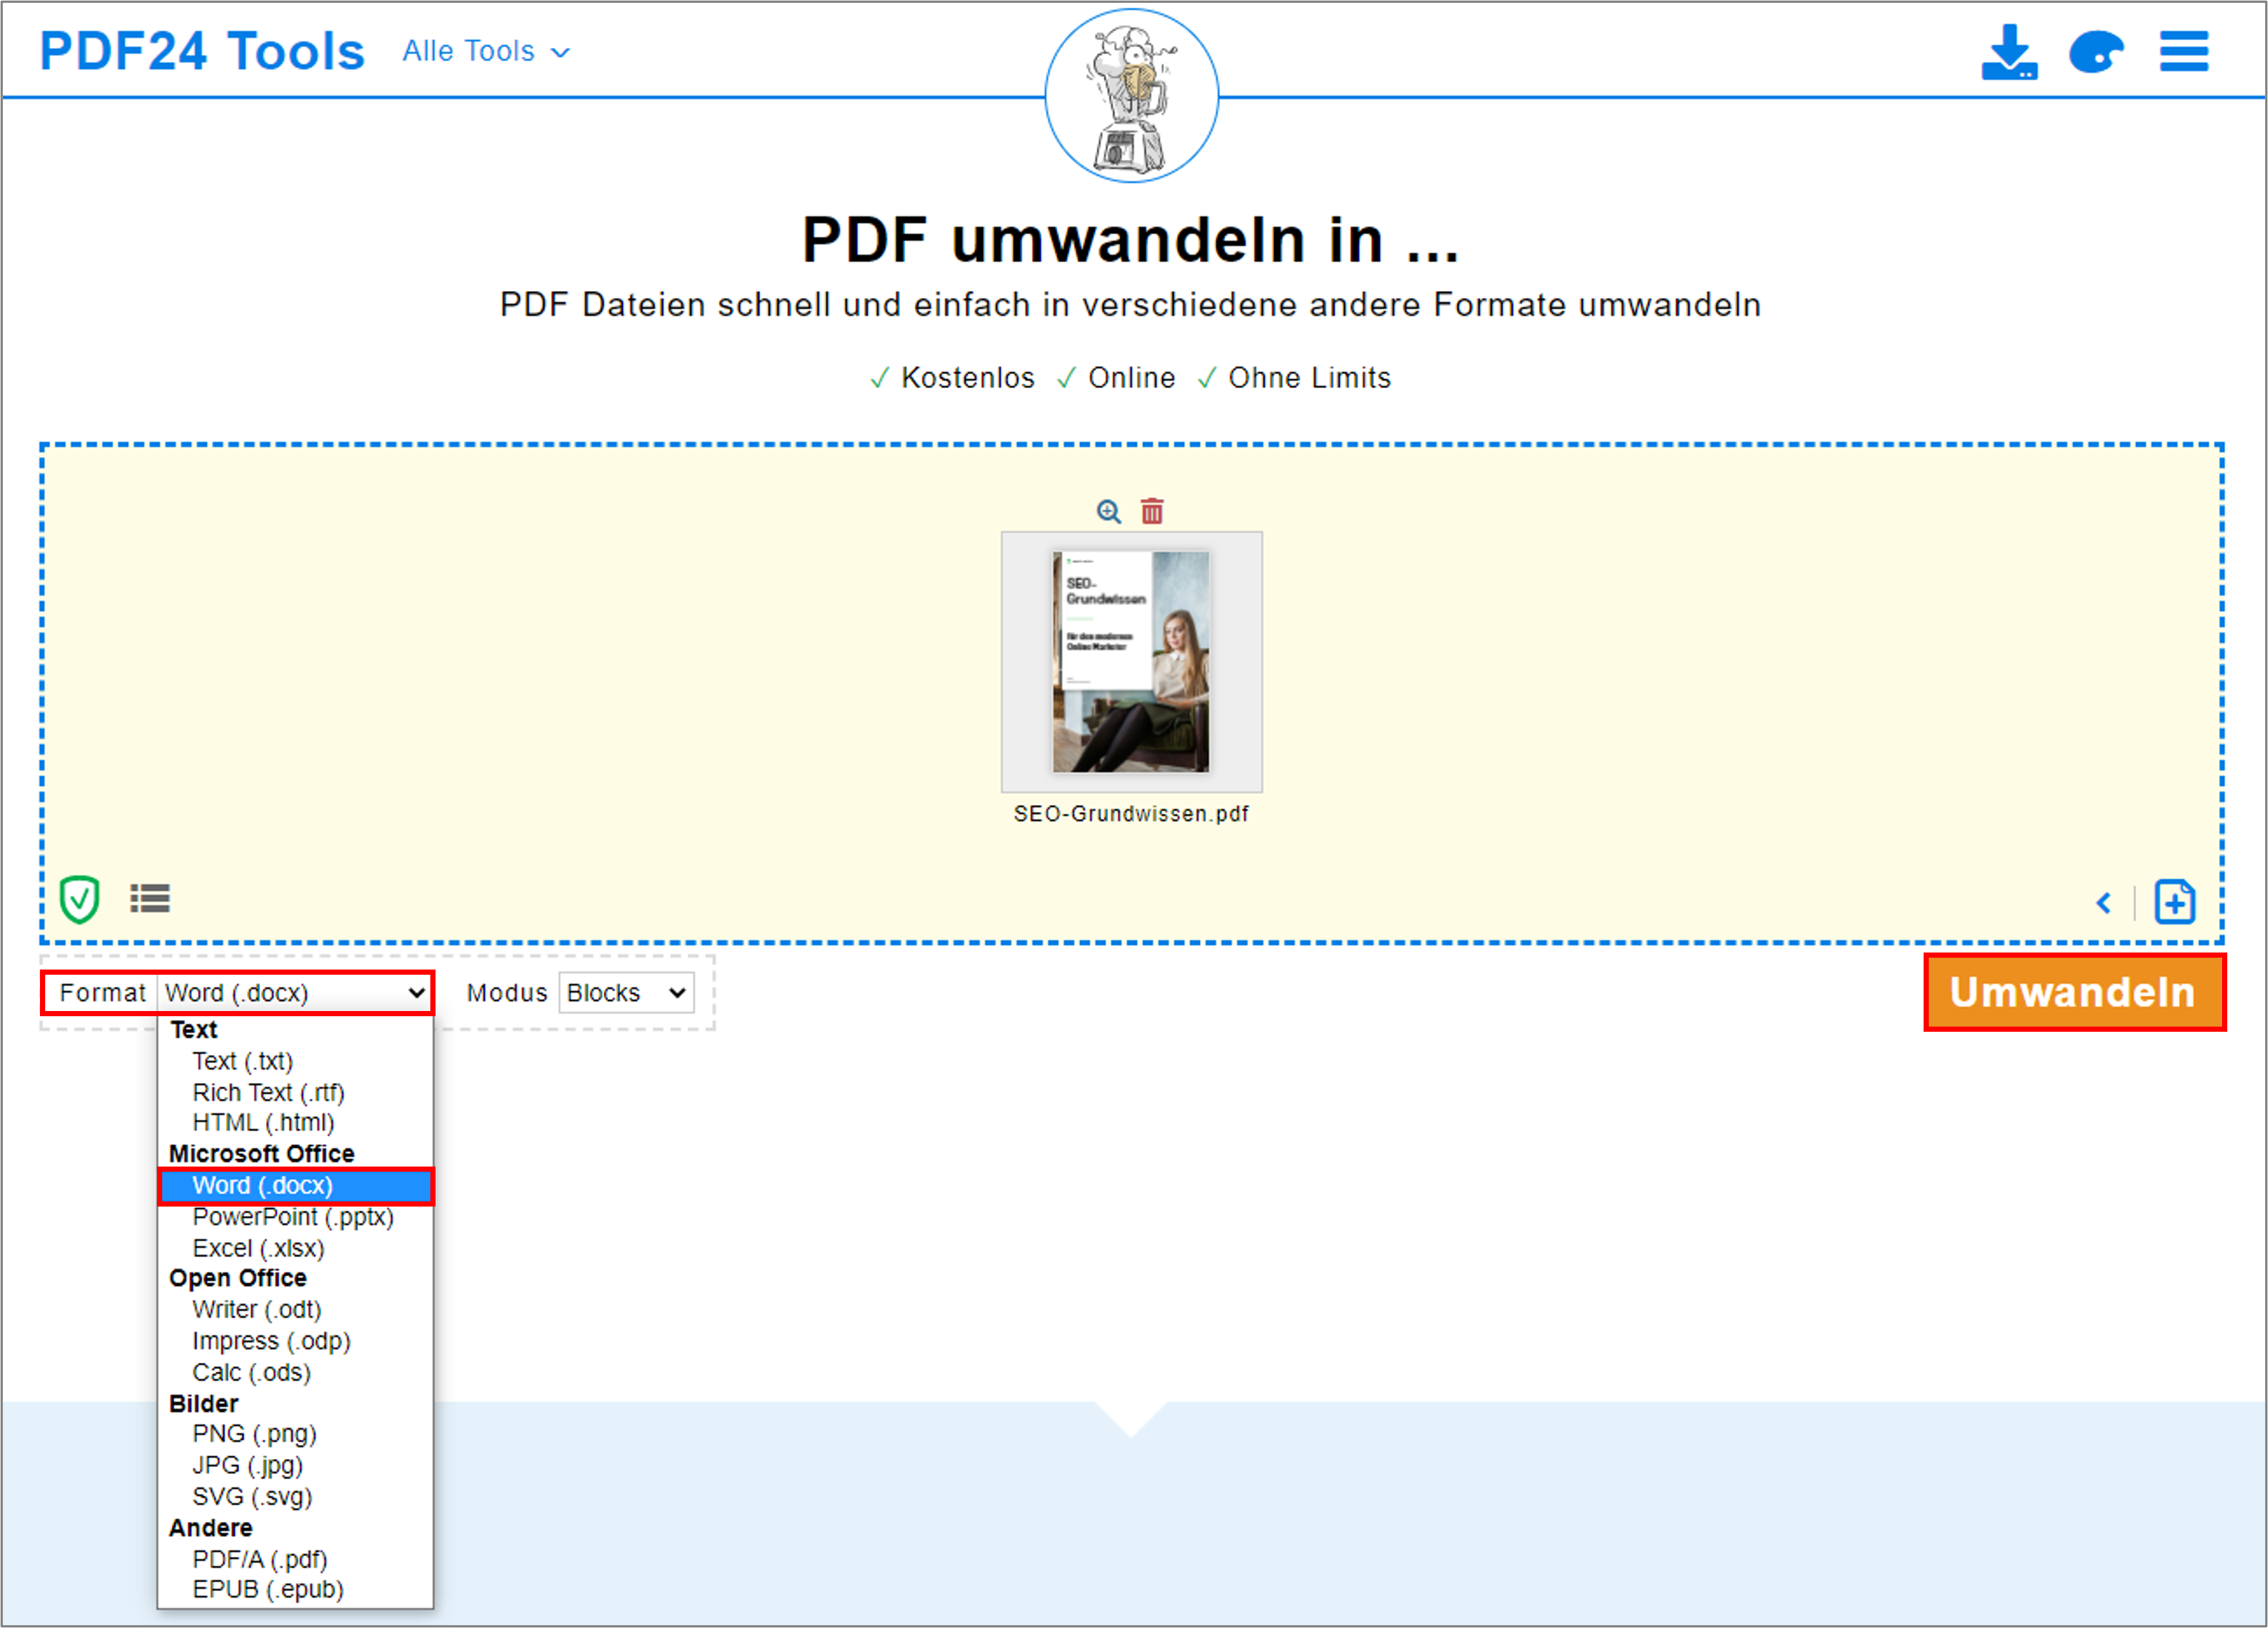 Wenn Sie auf den Pfeil bei "Format" klicken, können Sie das Format auswählen, welches das PDF nach der Umwandlung haben soll.